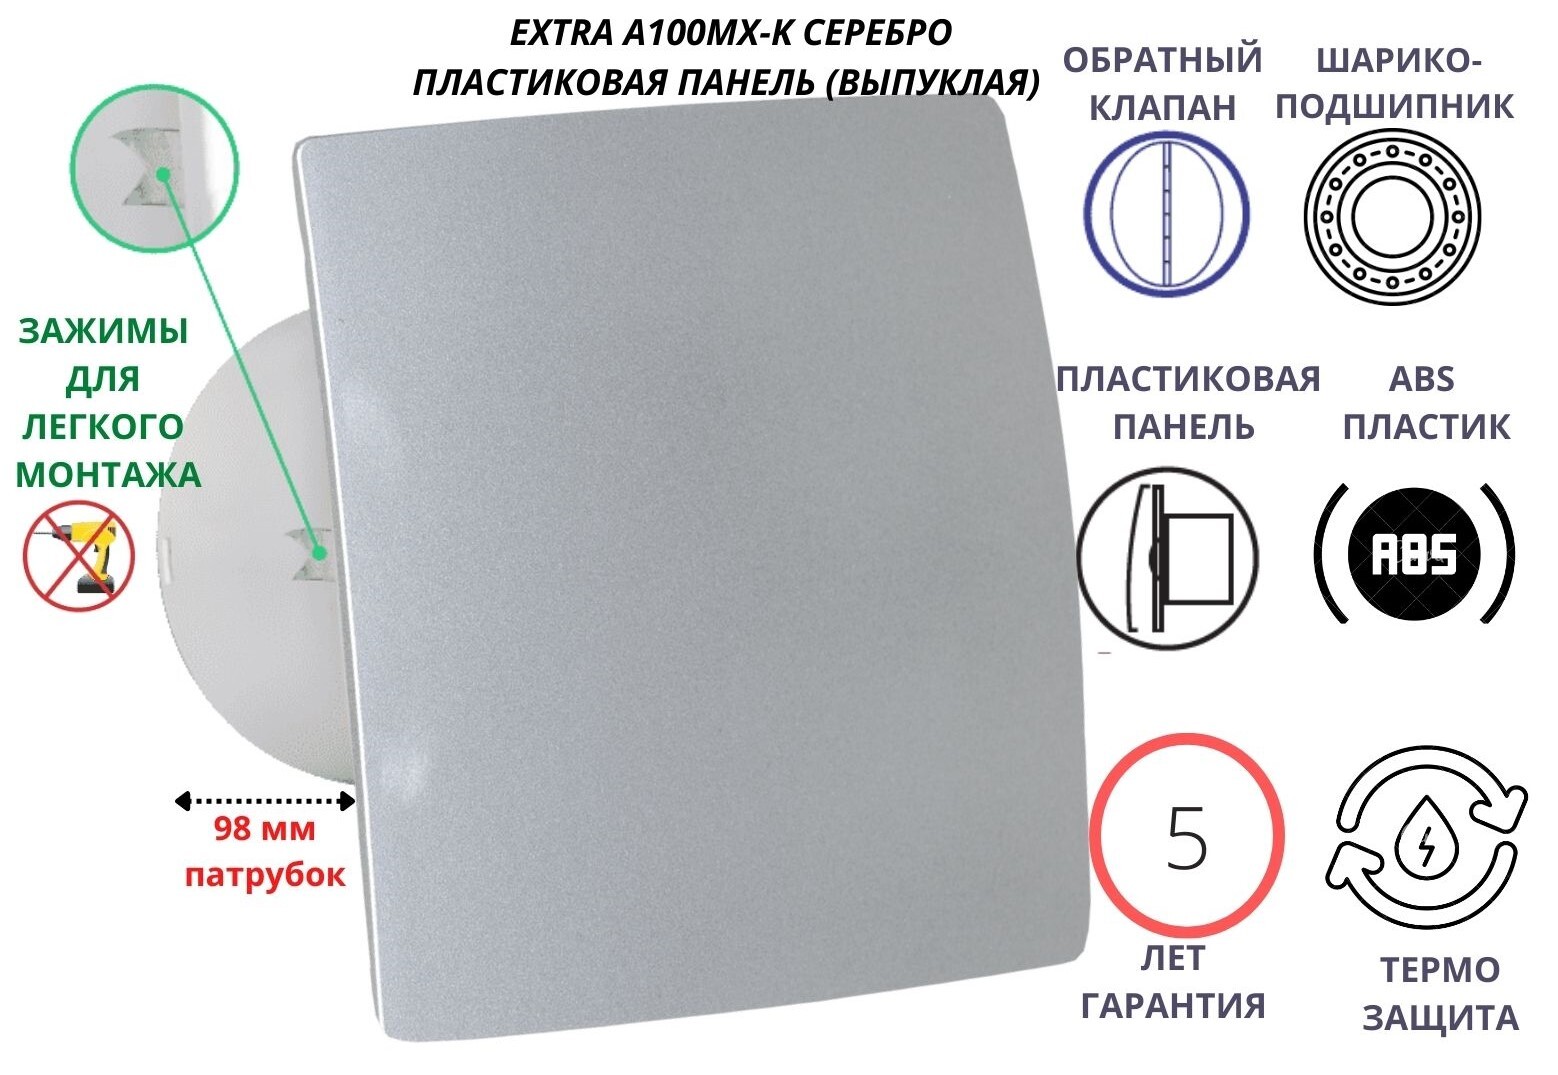 Вентилятор MTG D100 пластиковая серебристая панель крепеж без сверления IP-A100МX-K Сербия установка алмазного сверления ken 6200n